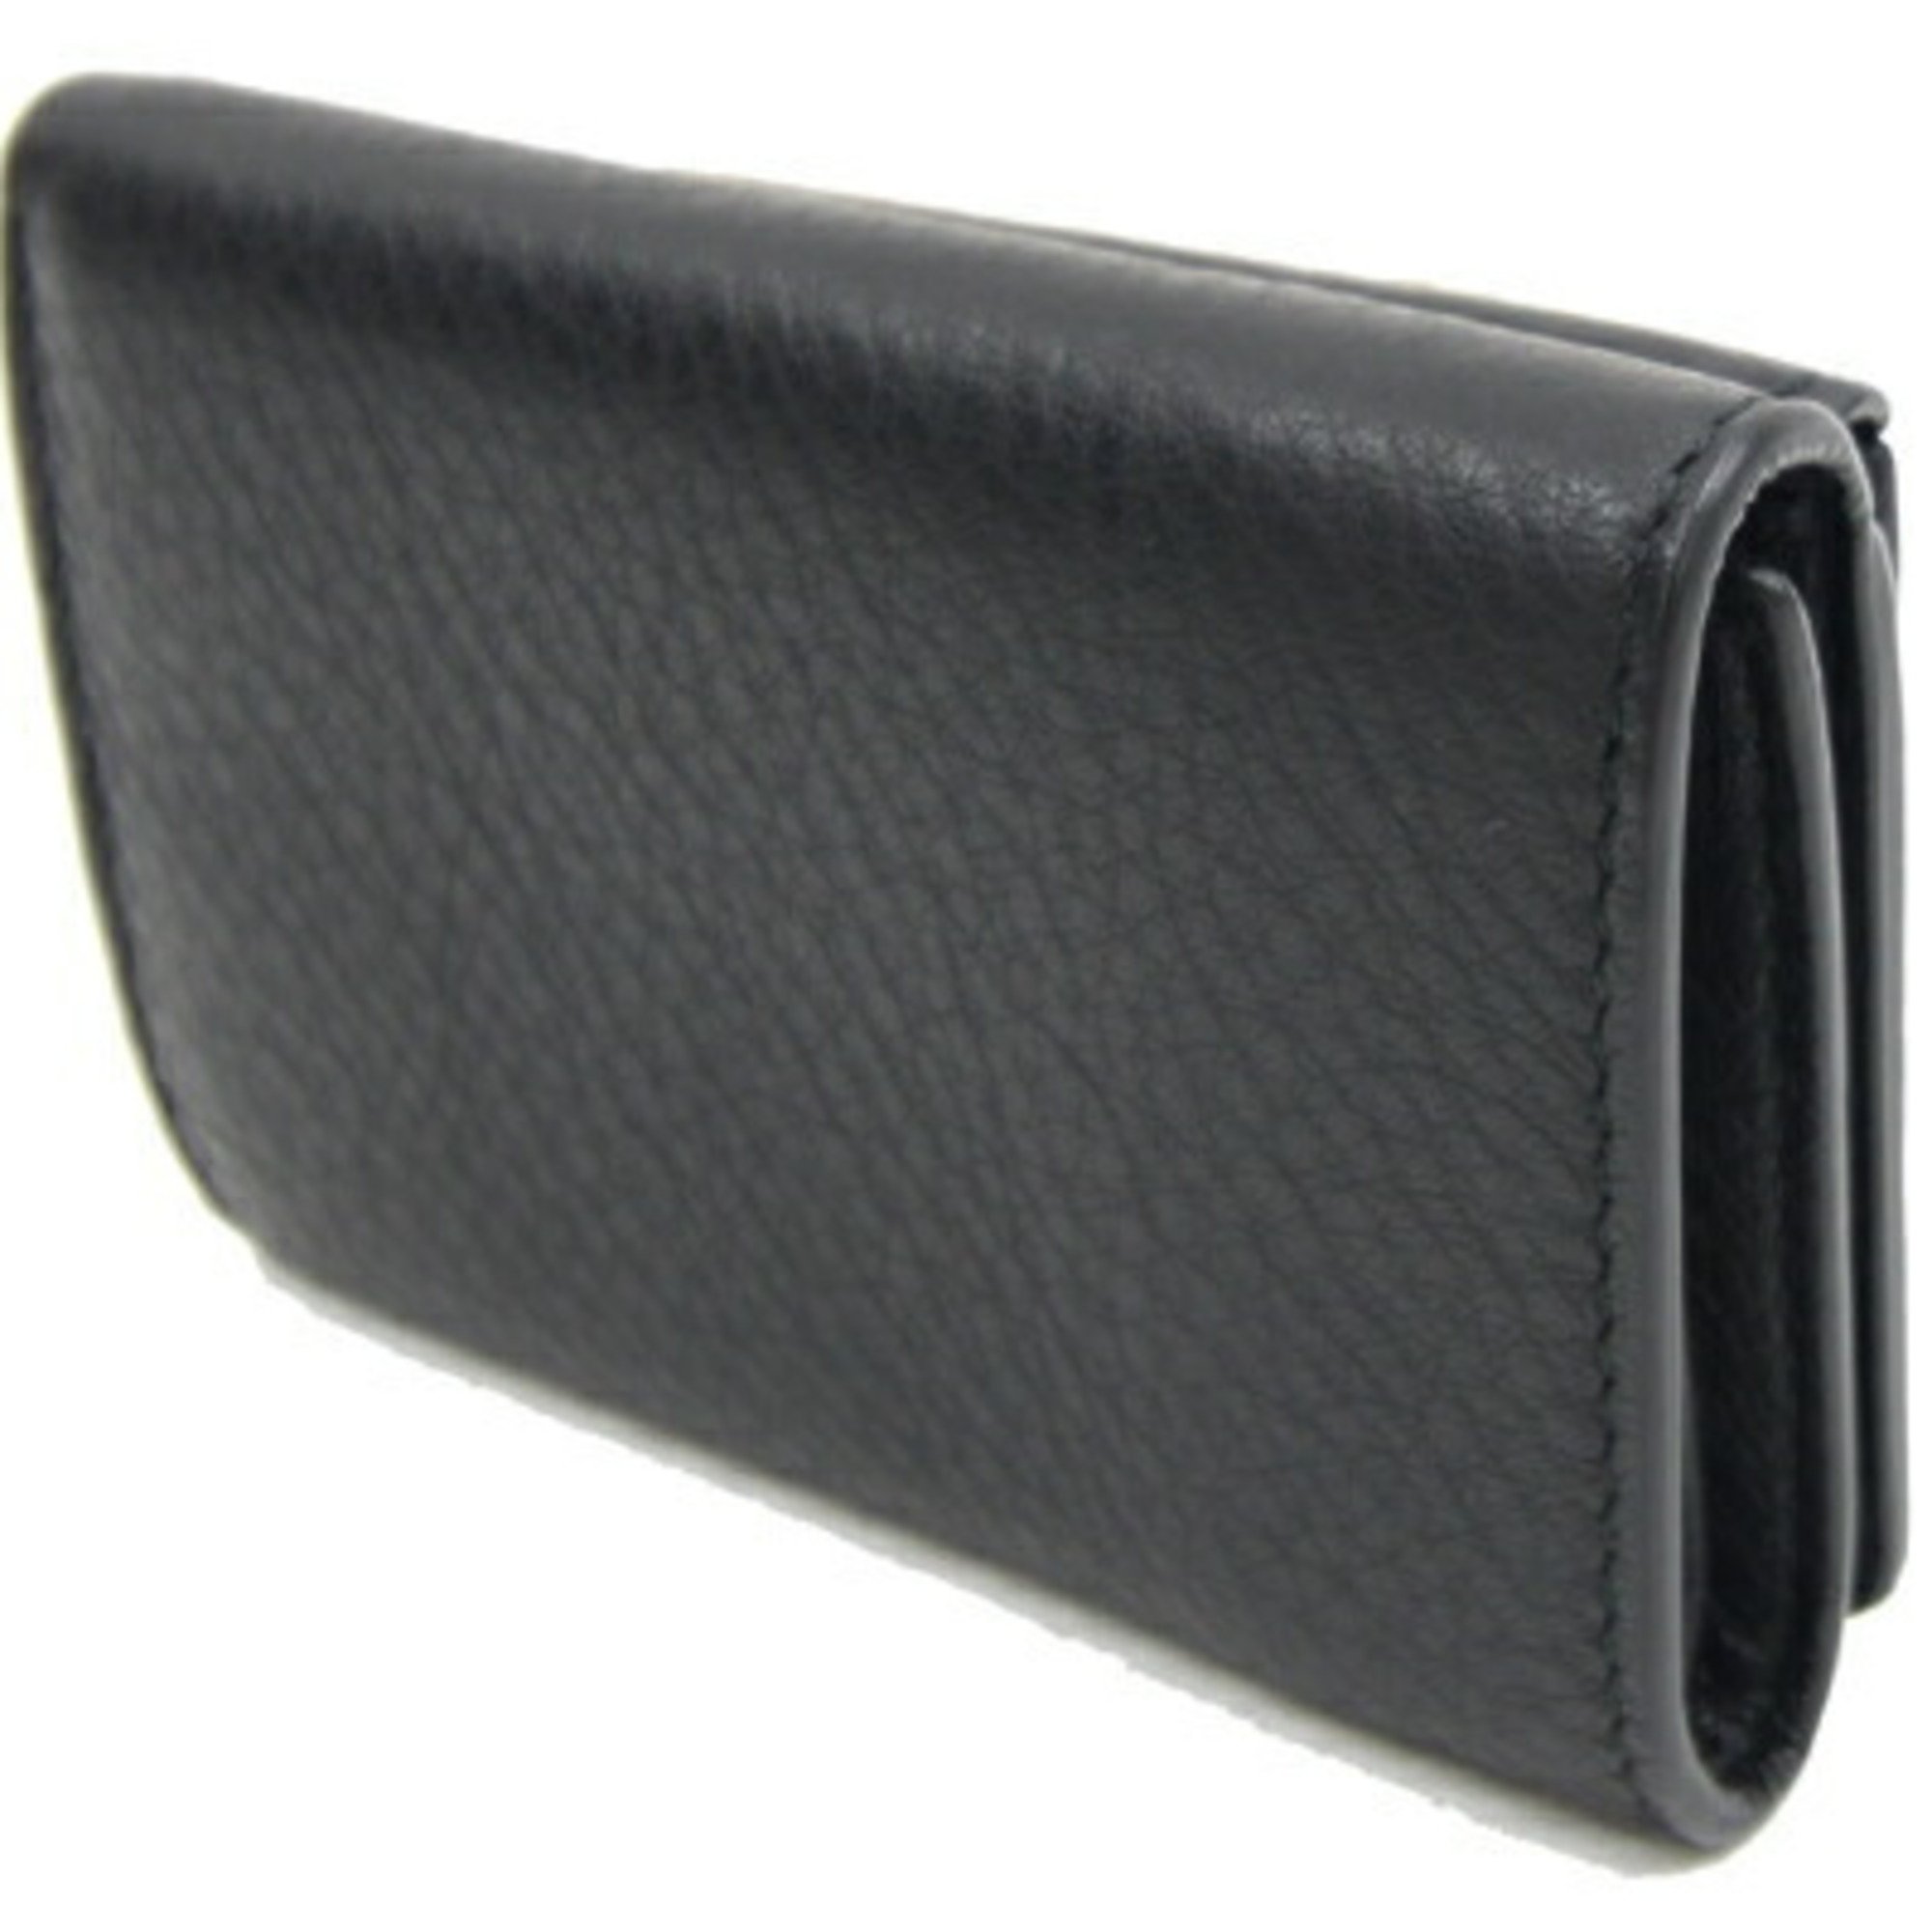 Balenciaga Tri-fold Wallet Paper 504565 Black Leather Compact Small Women's BALENCIAGA